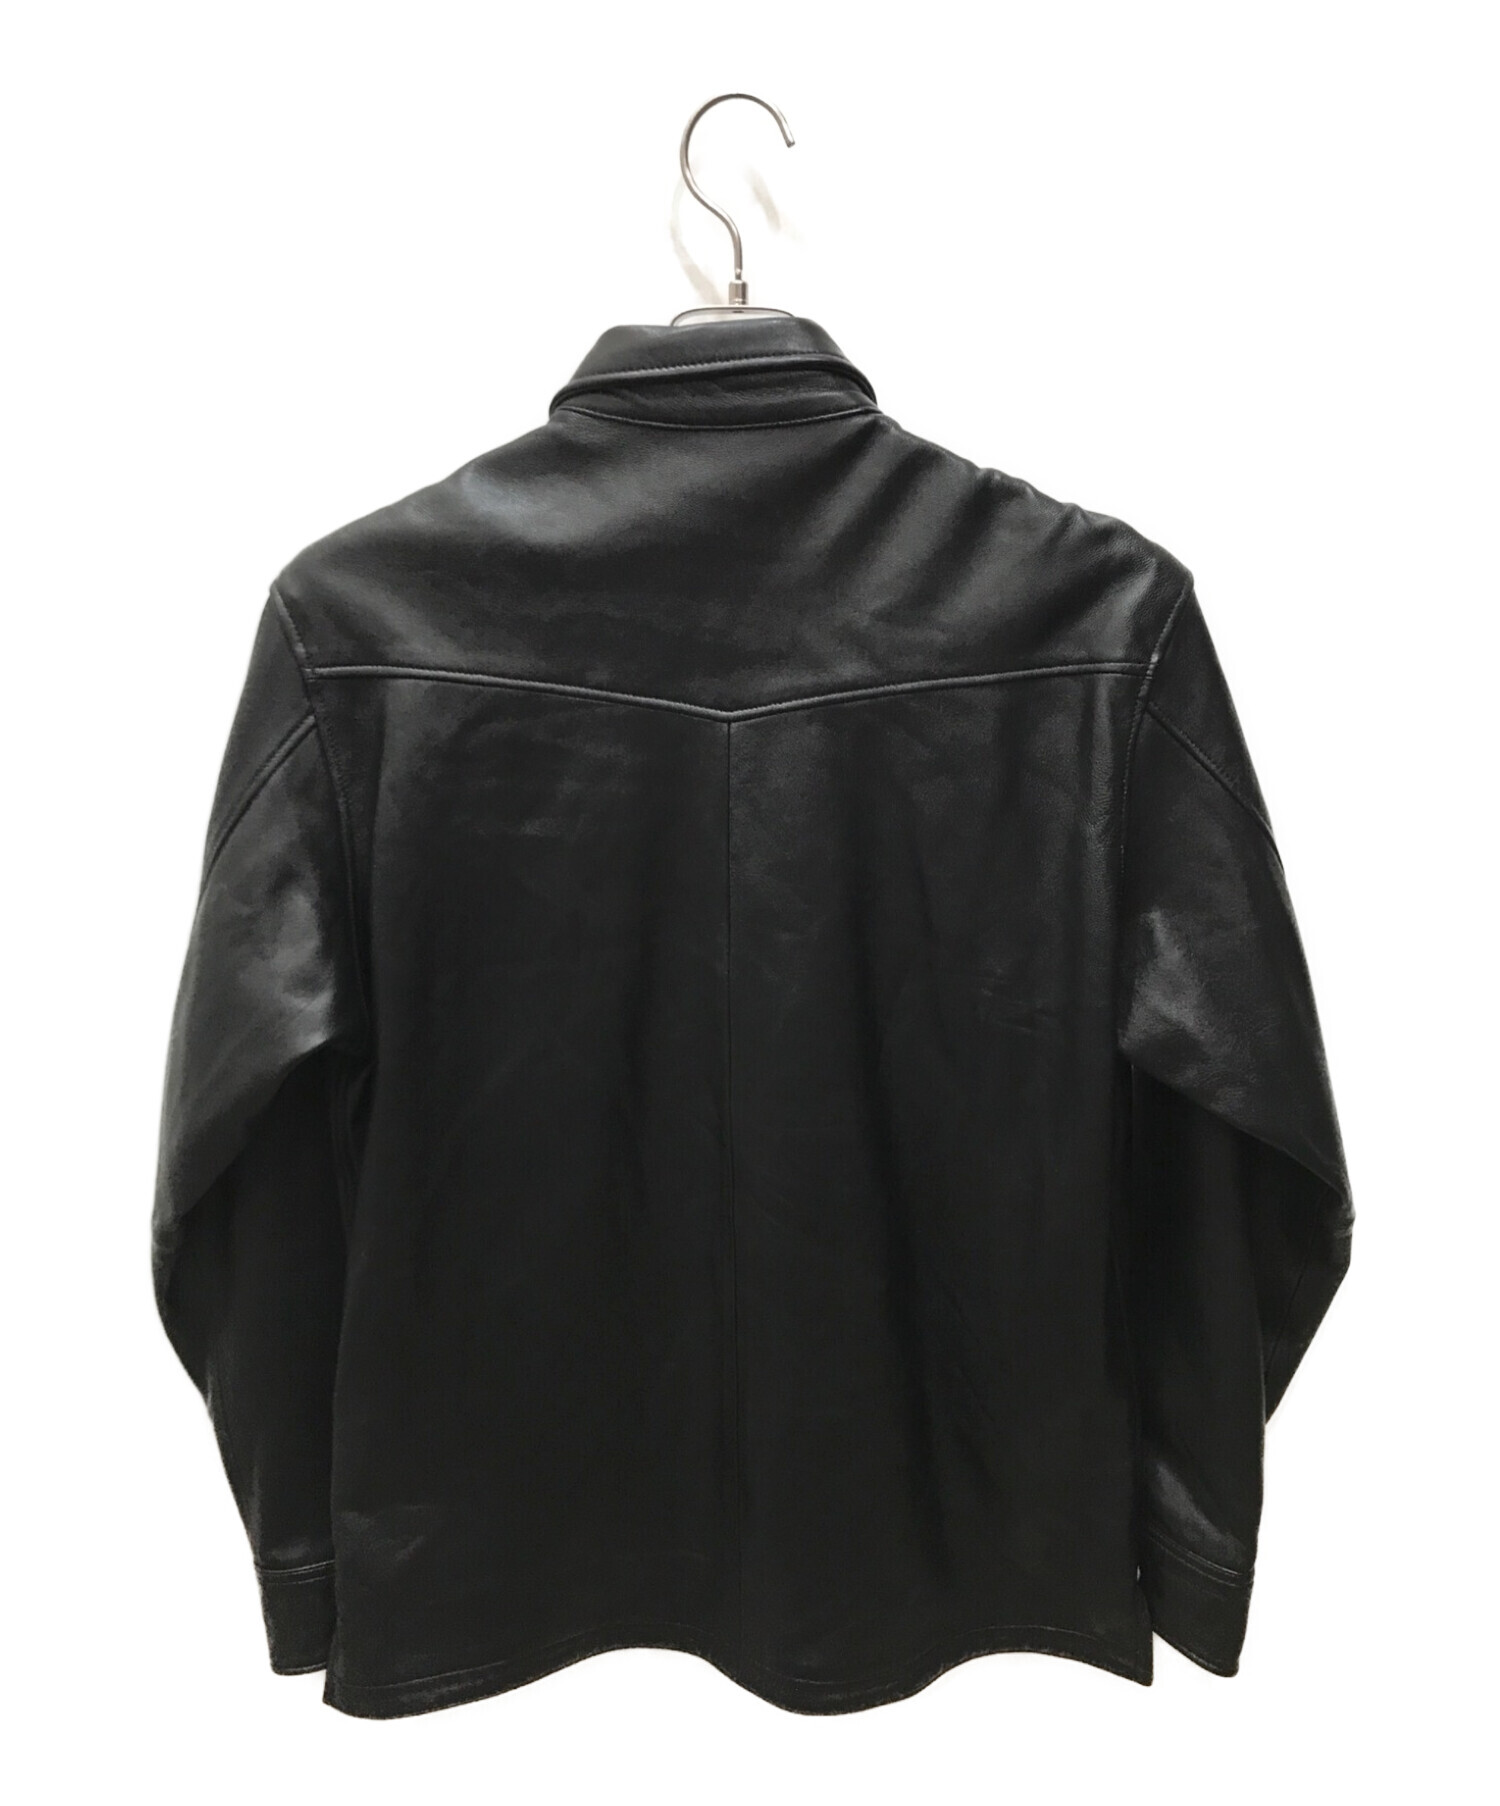 Schott (ショット) ラムレザーシャツ ブラック サイズ:L